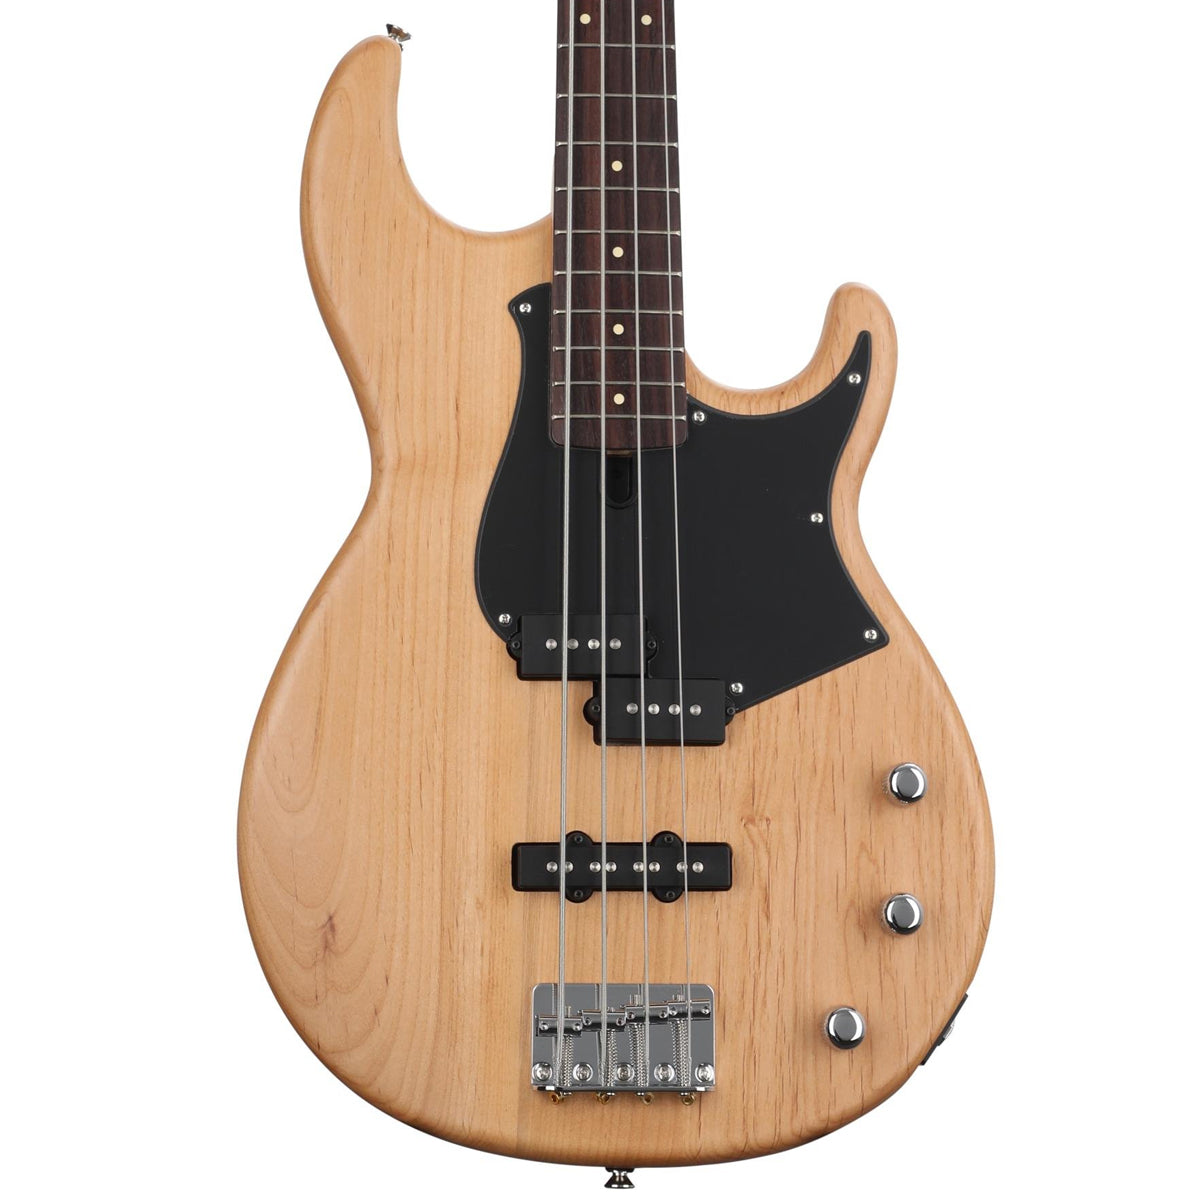 Yamaha BB 234 Electric 4-String Bass Guitar - Yellow Natural Satin